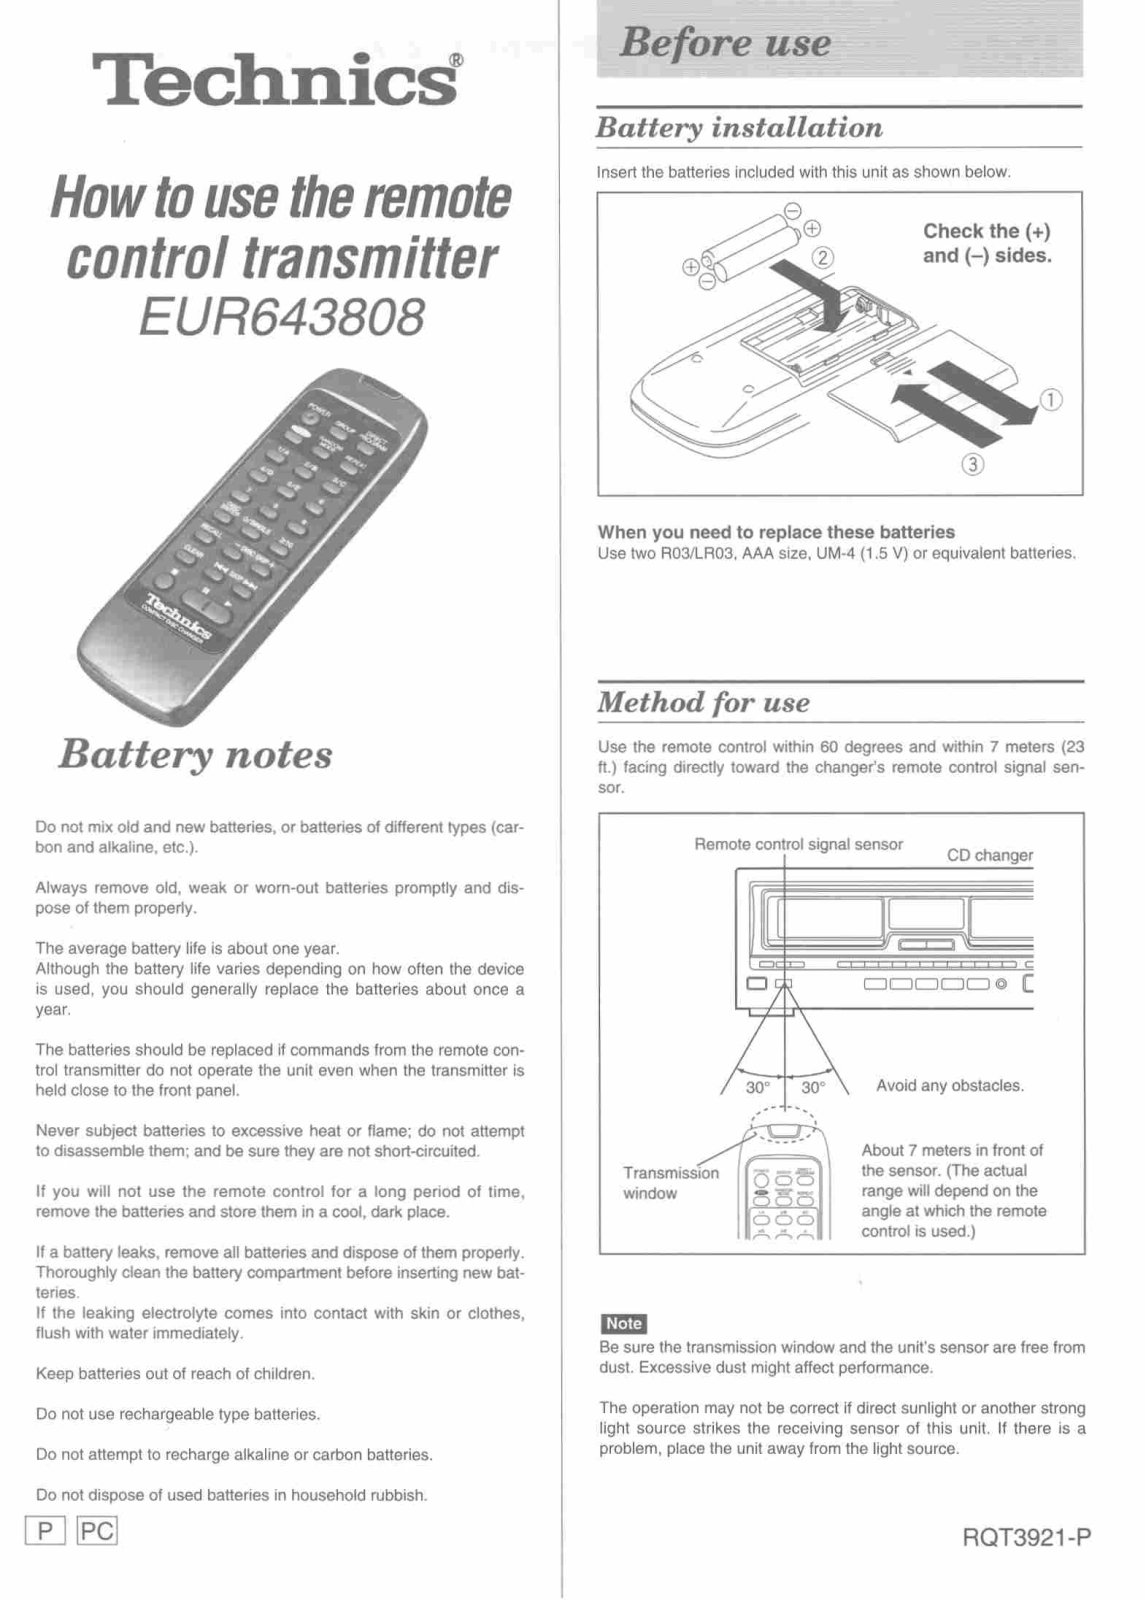 Panasonic EUR643808 User Manual